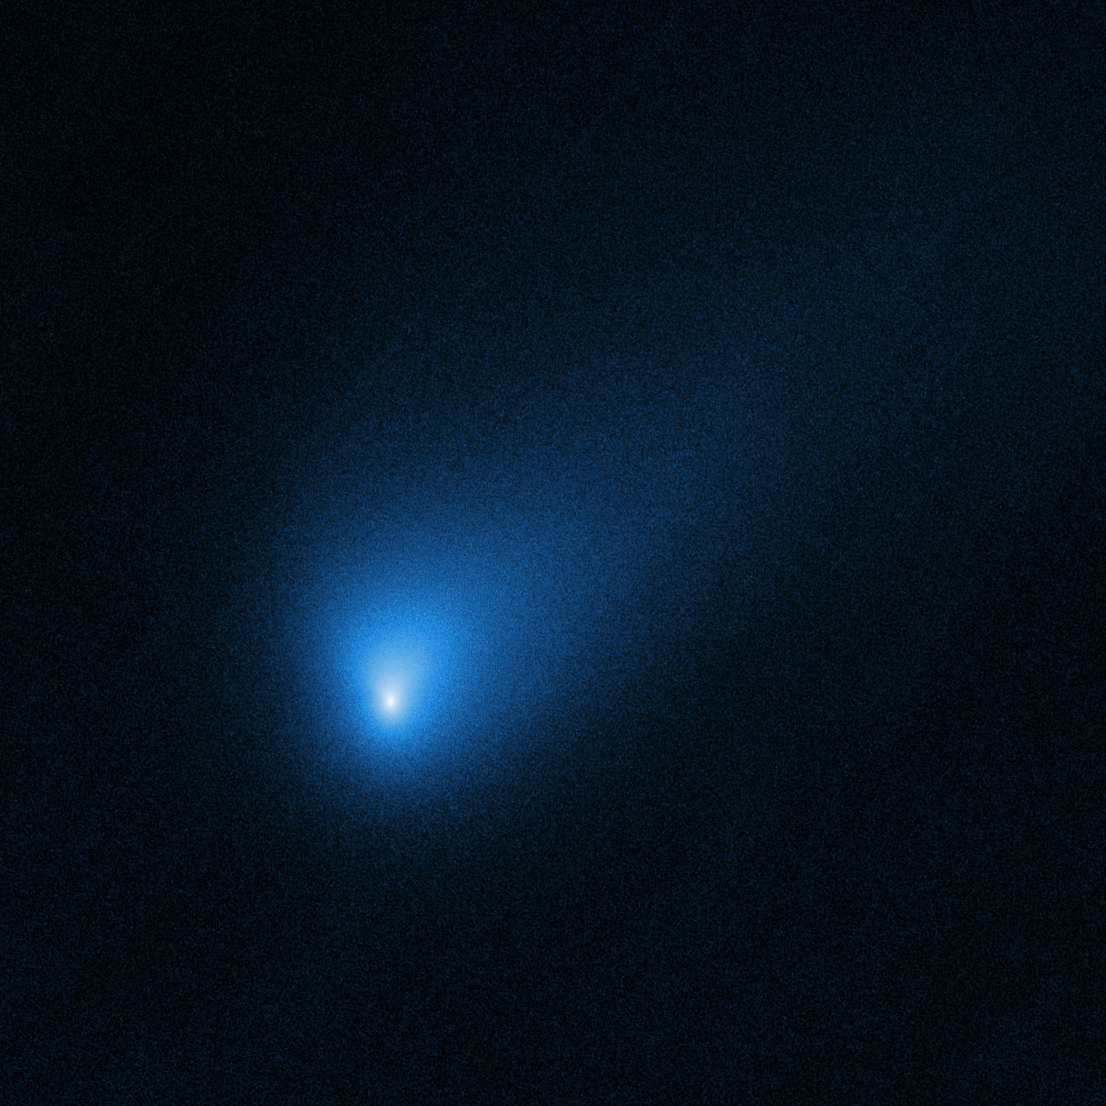 Nasa共有写真の最初の星間彗星